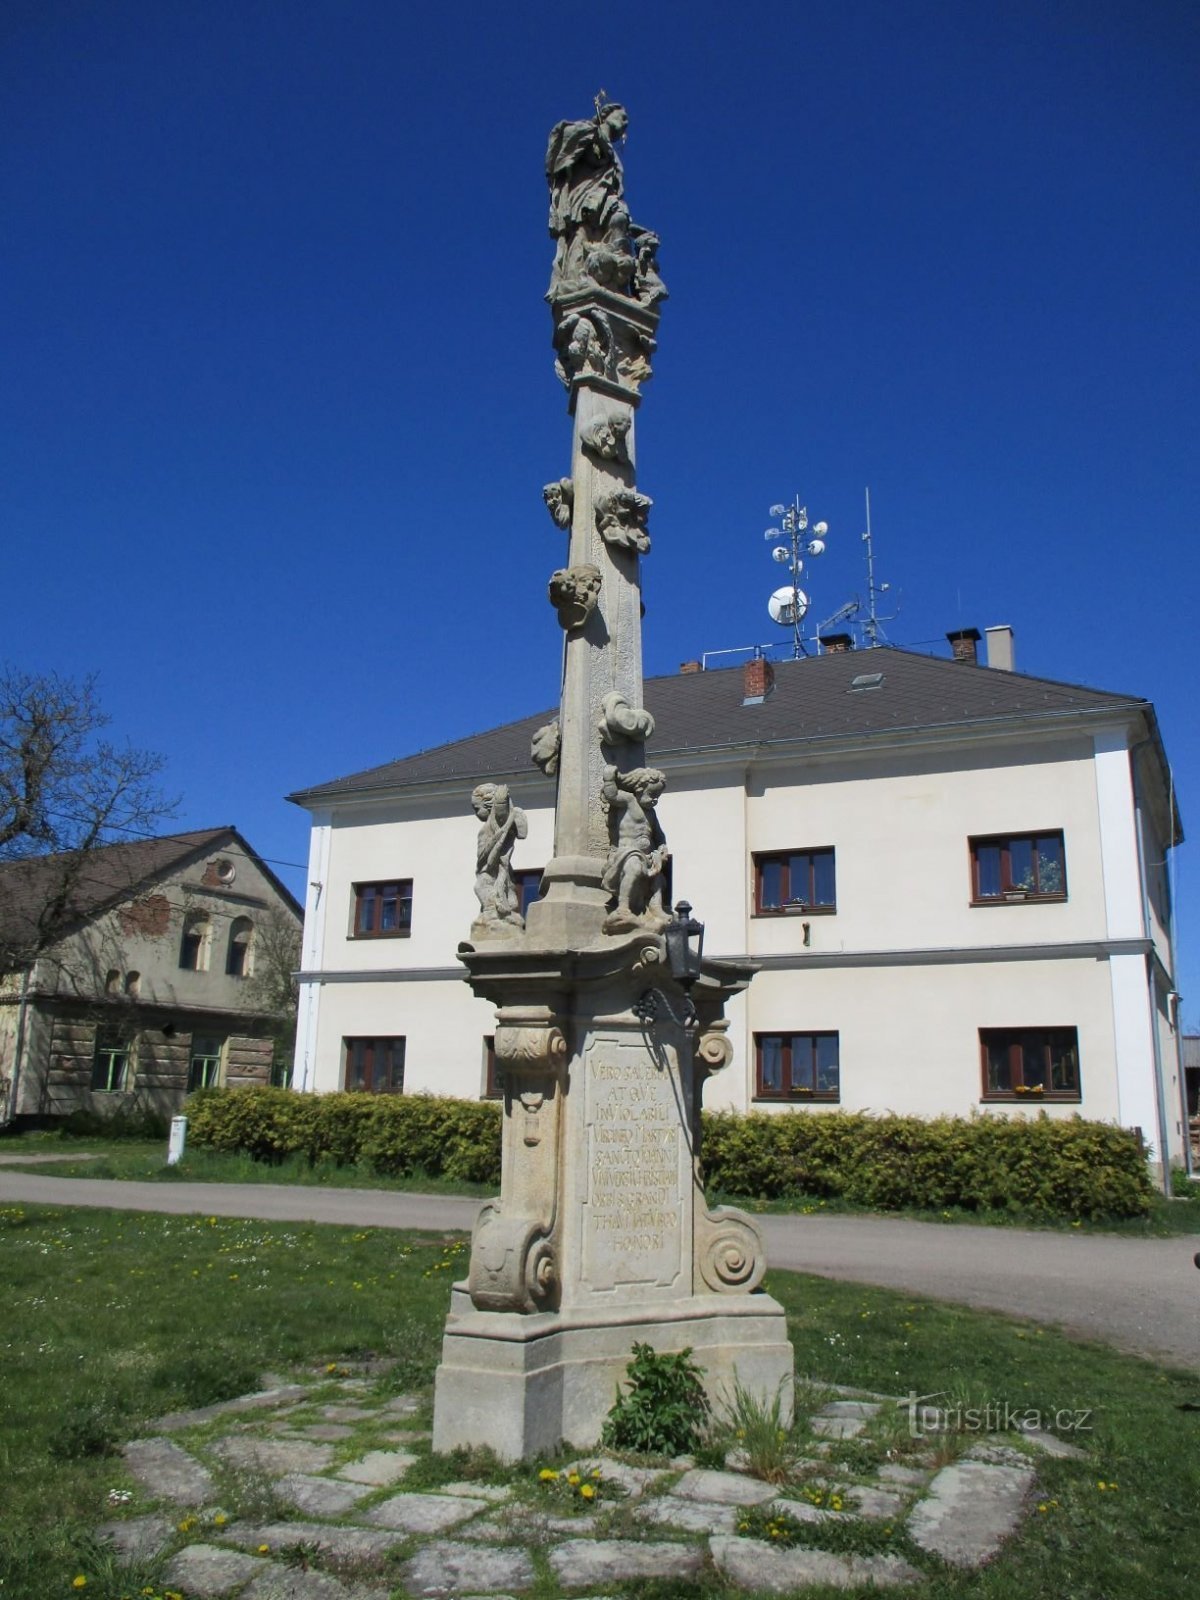 Eine Säule mit einer Statue von St. Johannes von Nepomuk (Chotěborky, 20.4.2020. April XNUMX)